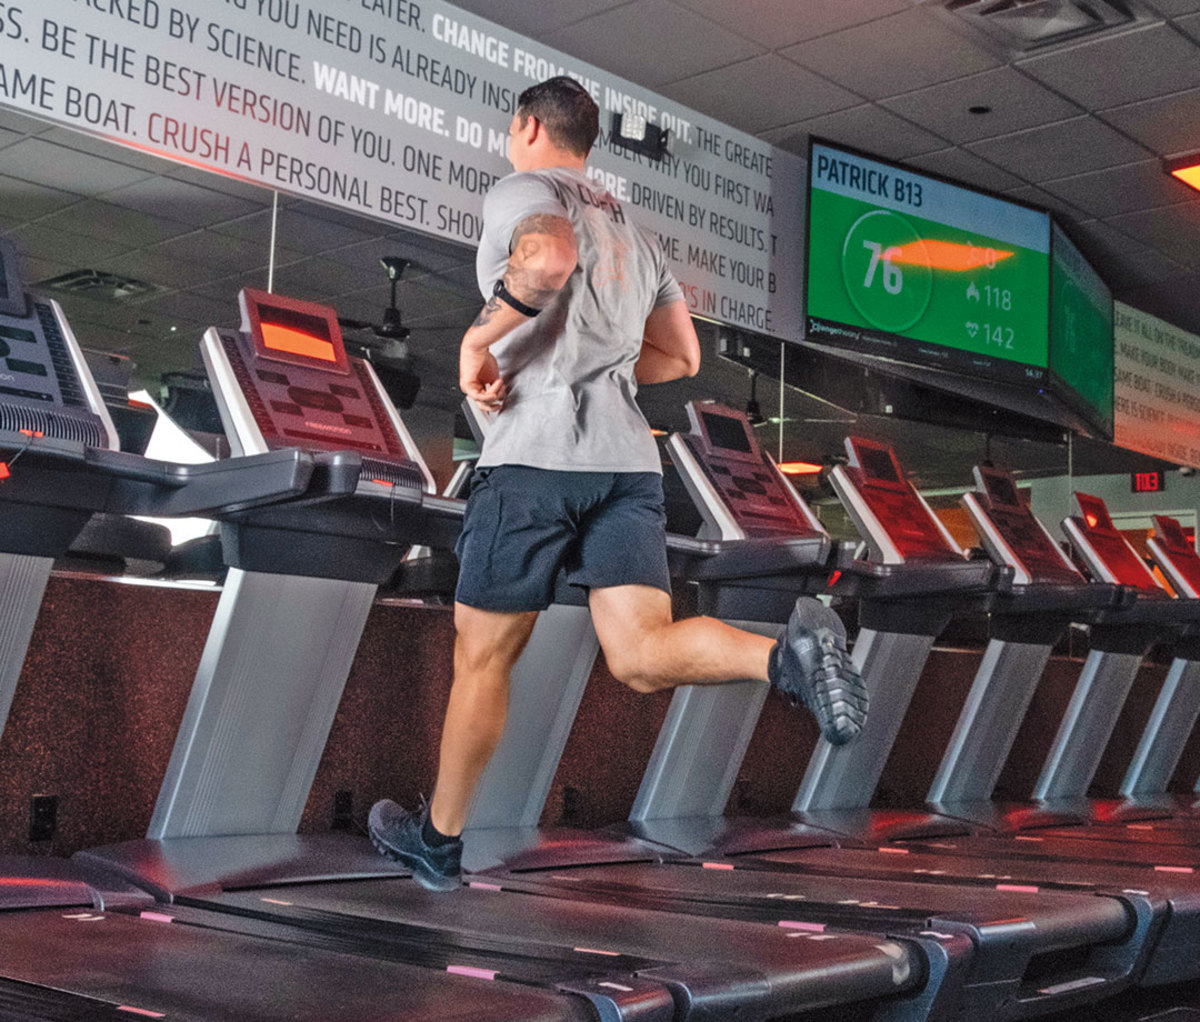 Man runs on treadmill